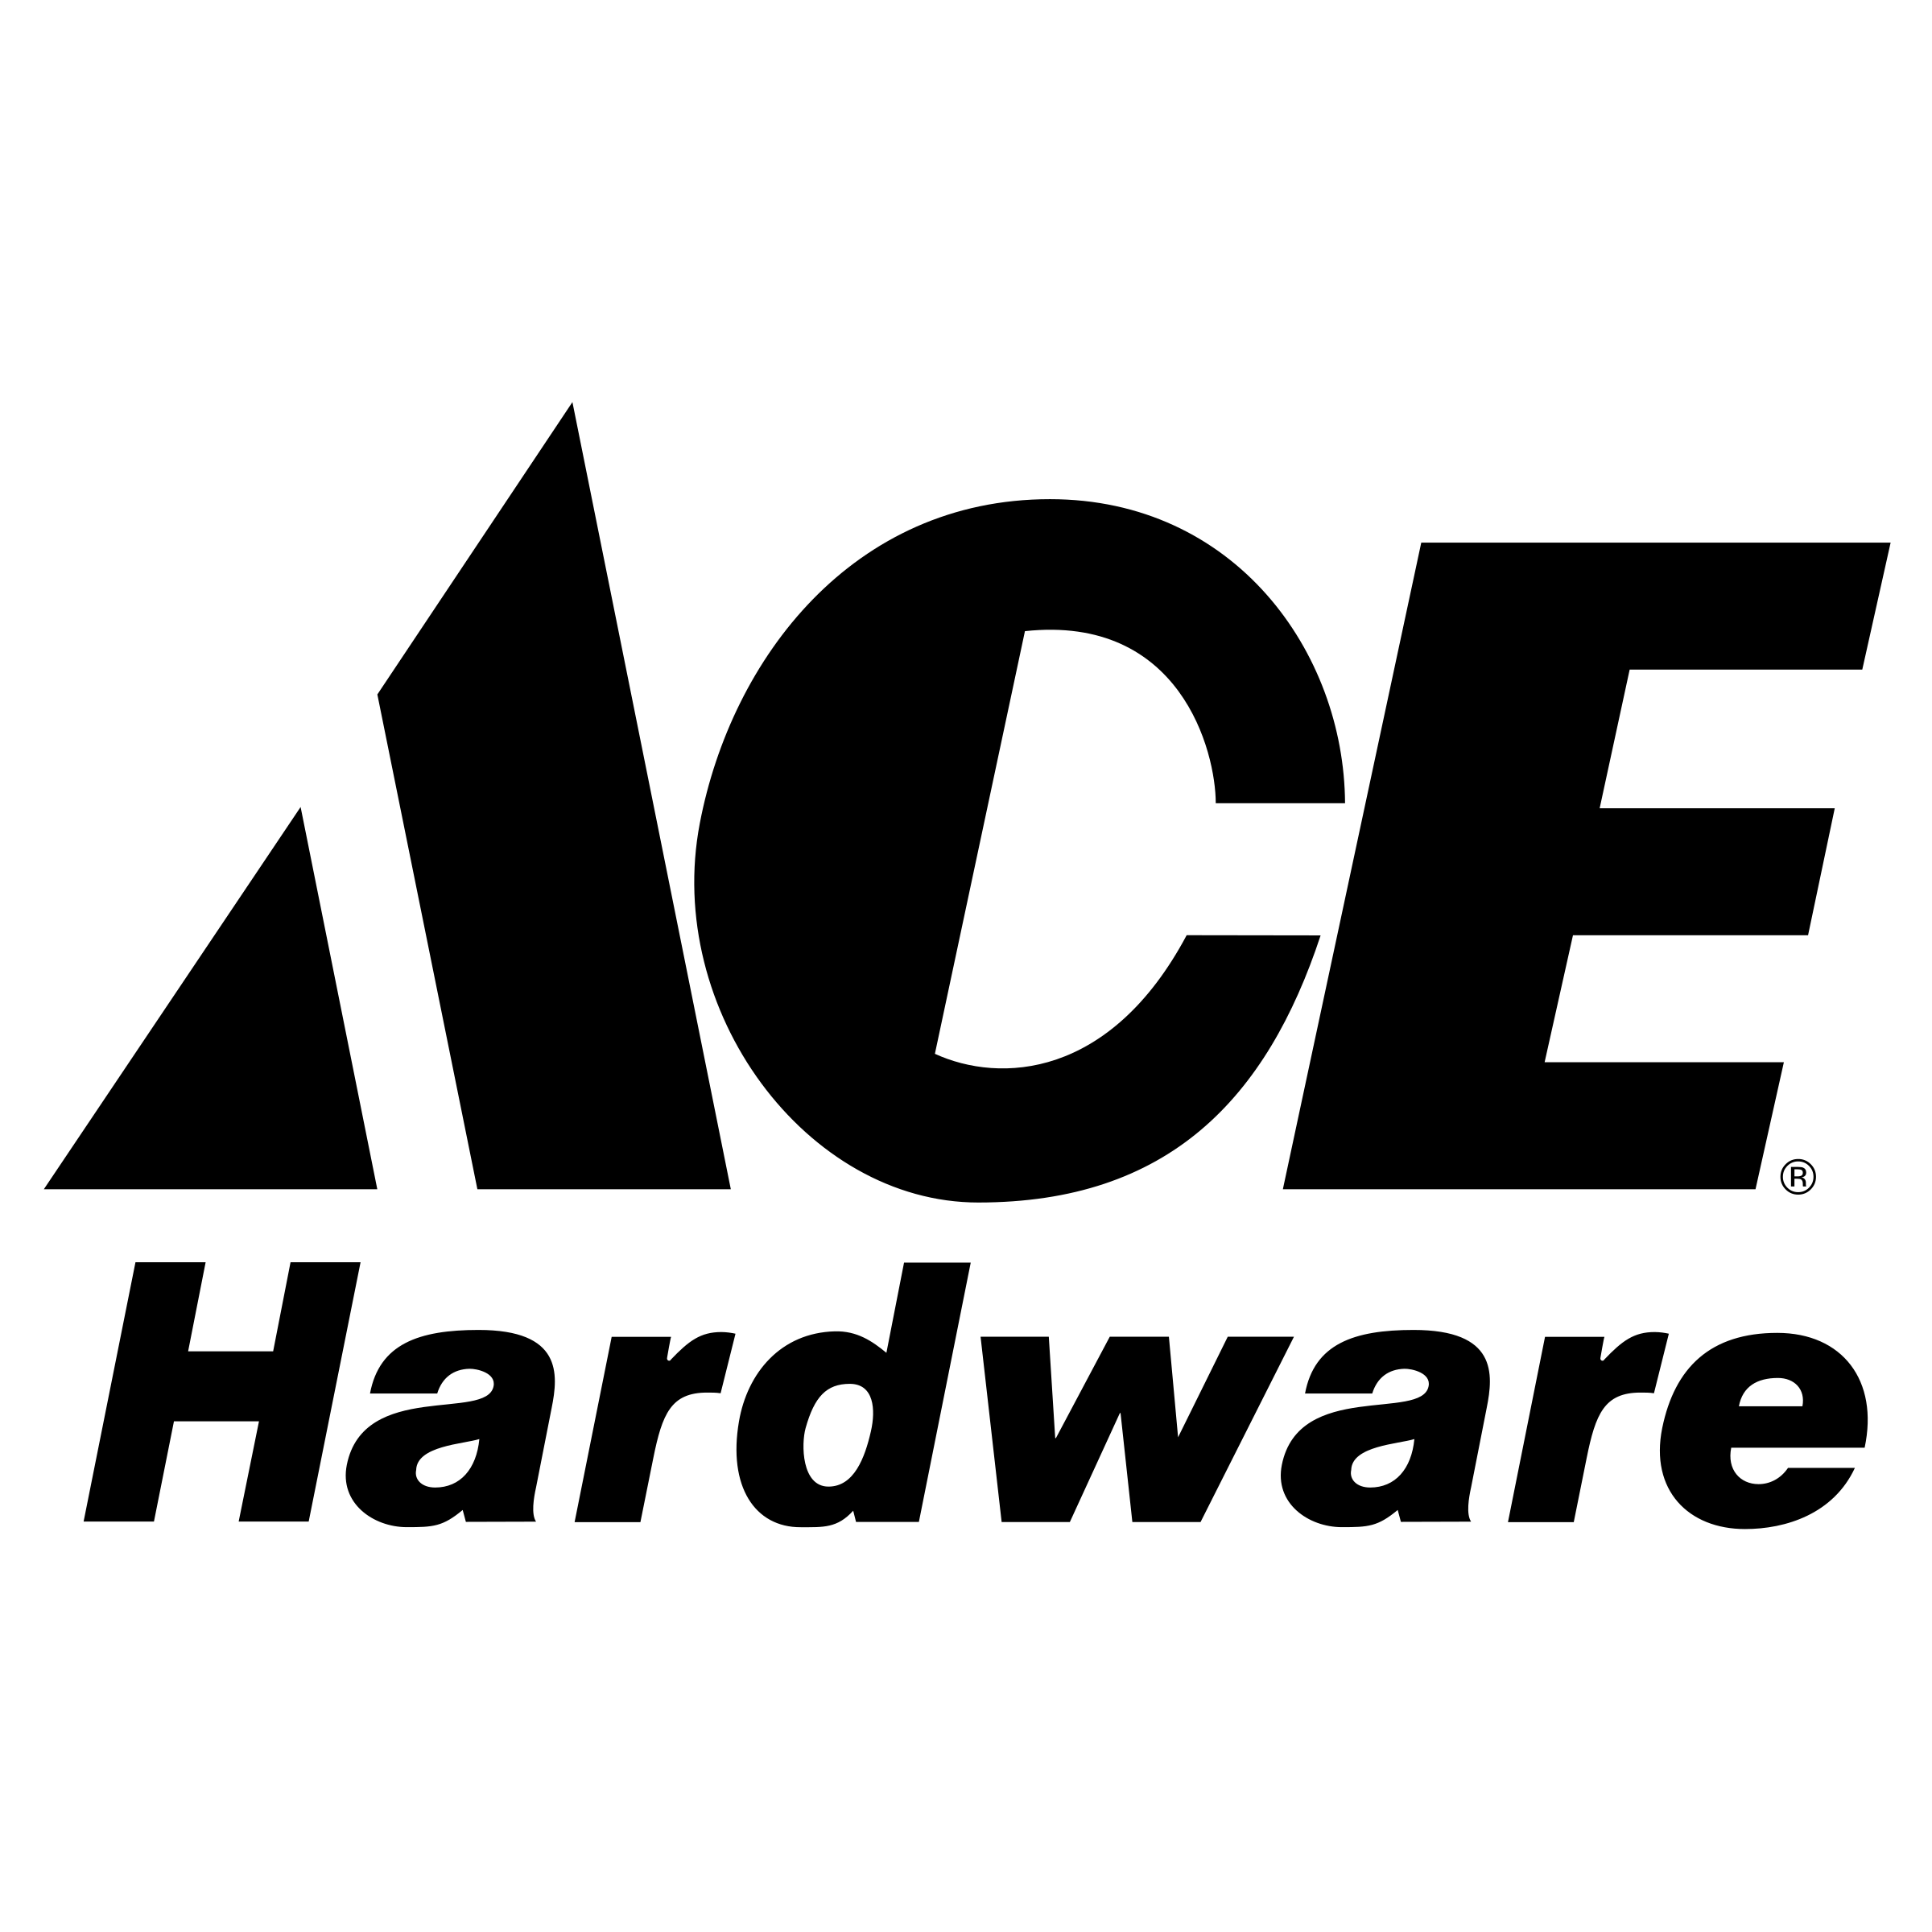 ACE Hardware Logo PNG Transparent & SVG Vector.